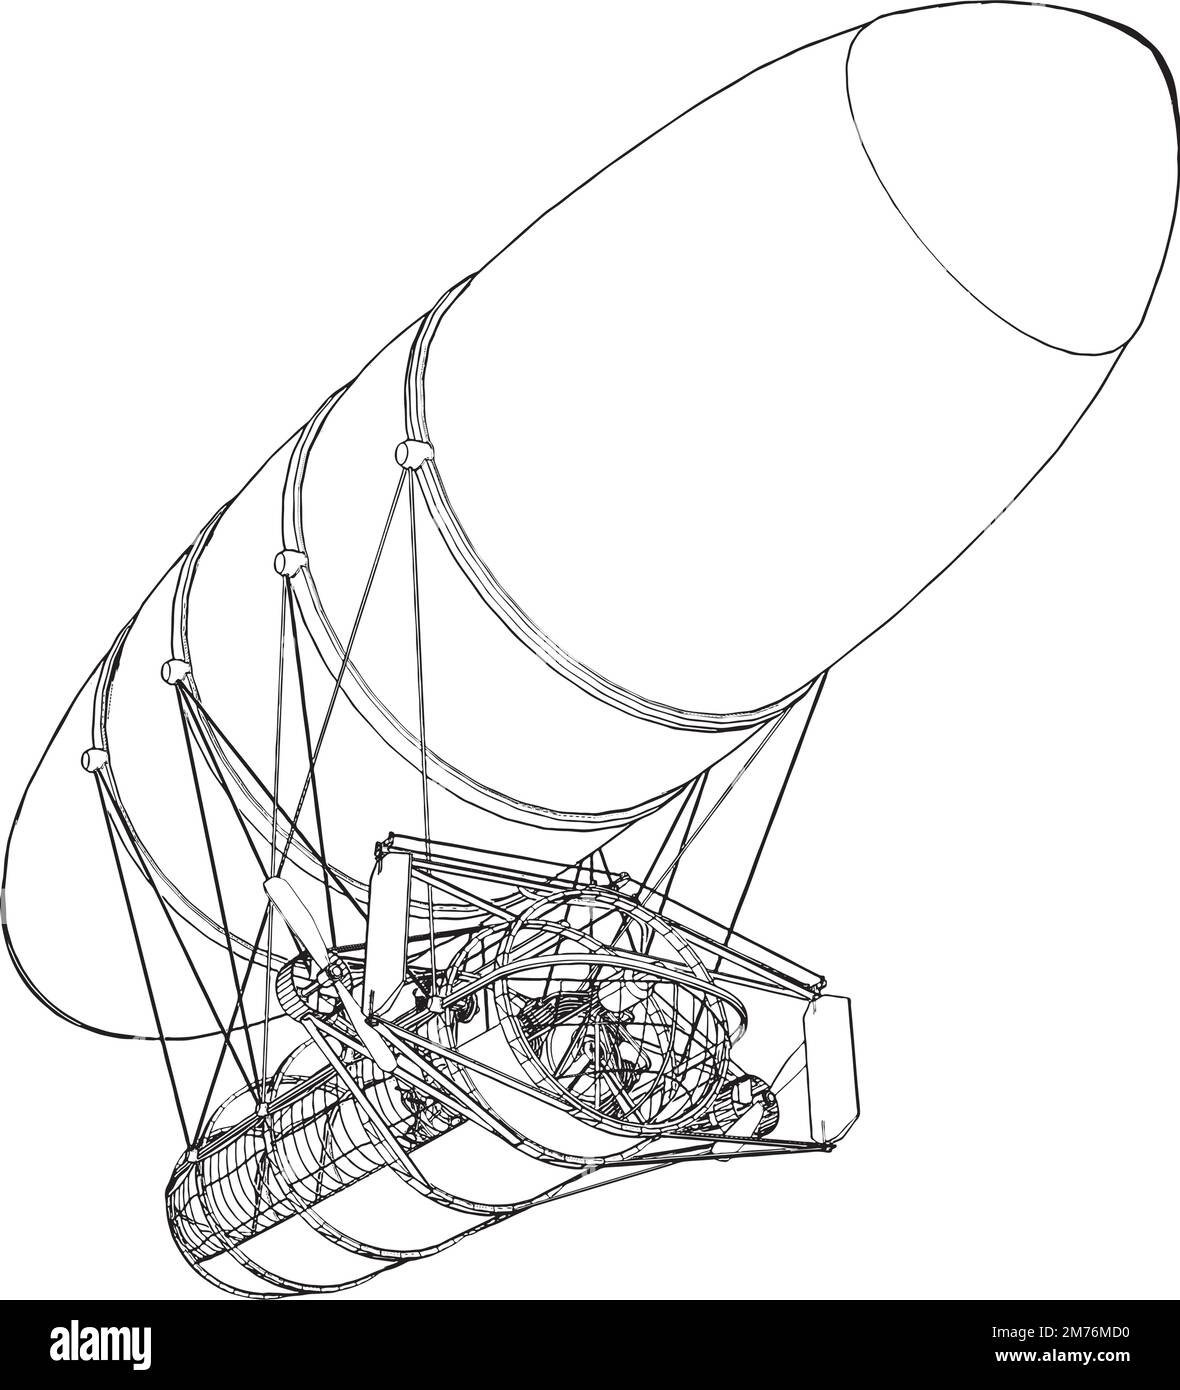 Zeppelin Vector. Illustration On White Background. A vector illustration Of A Zeppelin. Stock Vector